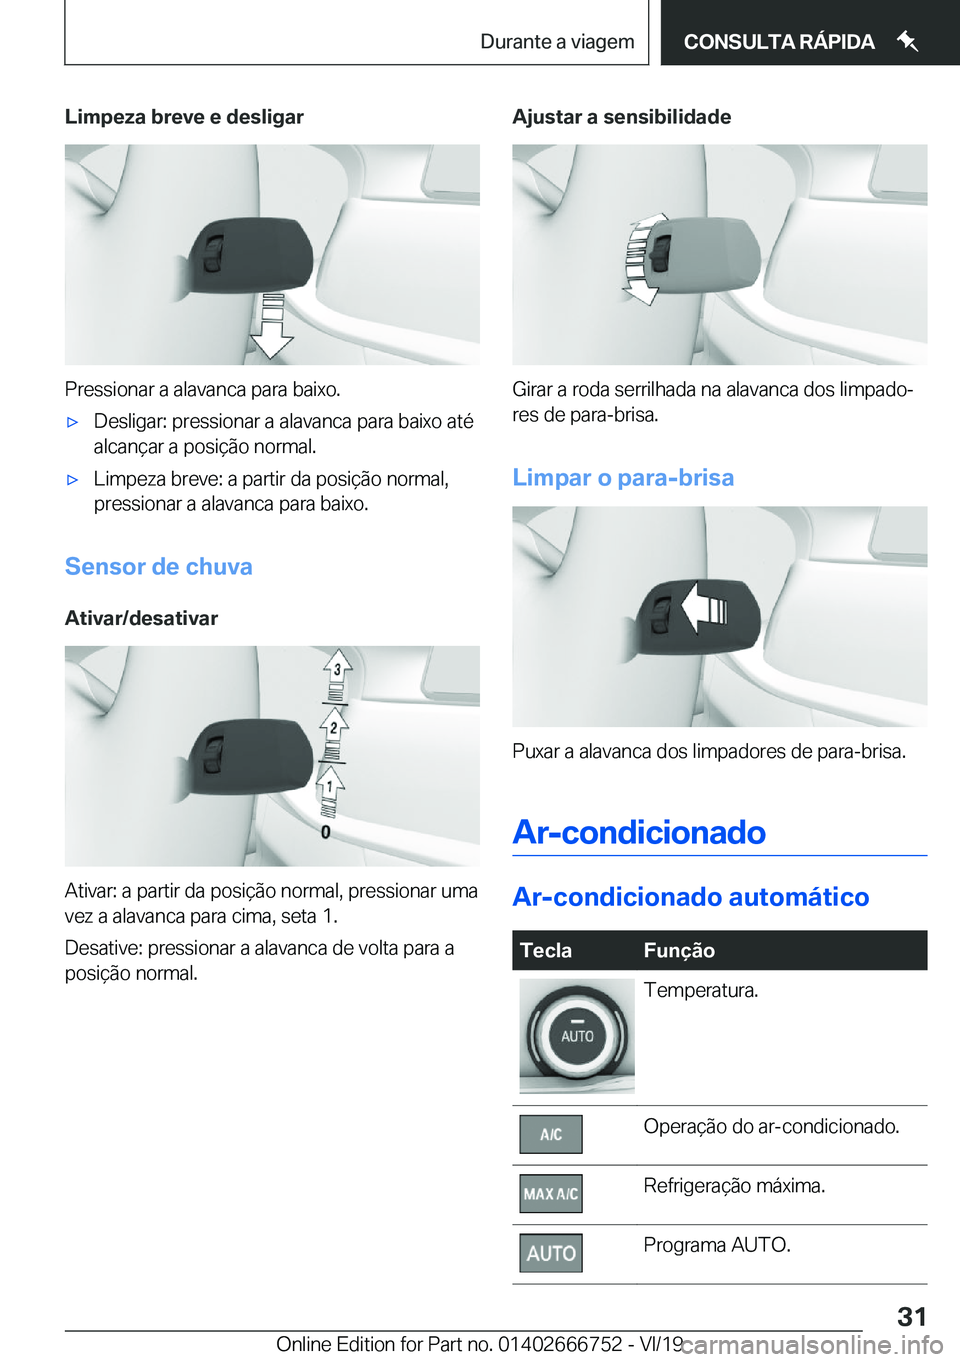 BMW M5 2020  Manual do condutor (in Portuguese) �L�i�m�p�e�z�a��b�r�e�v�e��e��d�e�s�l�i�g�a�r
�P�r�e�s�s�i�o�n�a�r��a��a�l�a�v�a�n�c�a��p�a�r�a��b�a�i�x�o�.
'x�D�e�s�l�i�g�a�r�:��p�r�e�s�s�i�o�n�a�r��a��a�l�a�v�a�n�c�a��p�a�r�a��b�a